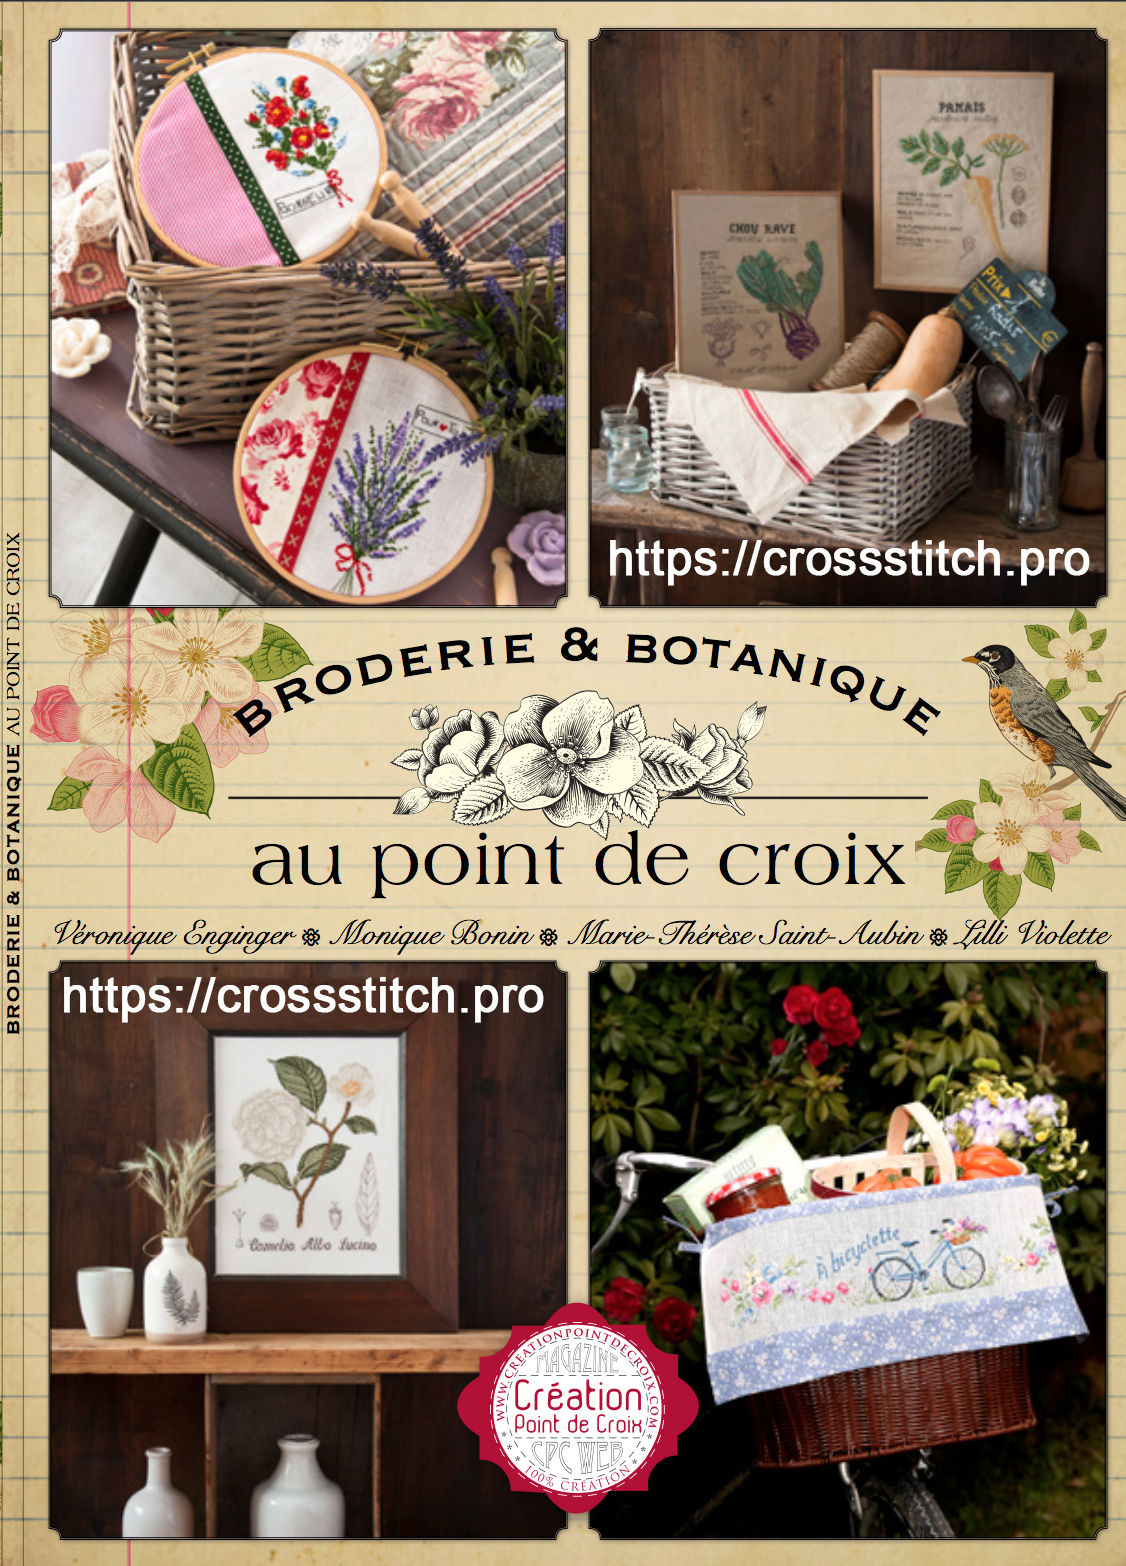 Broderie et botanique au point de croix / Вышивка и ботаника - спецвыпуск